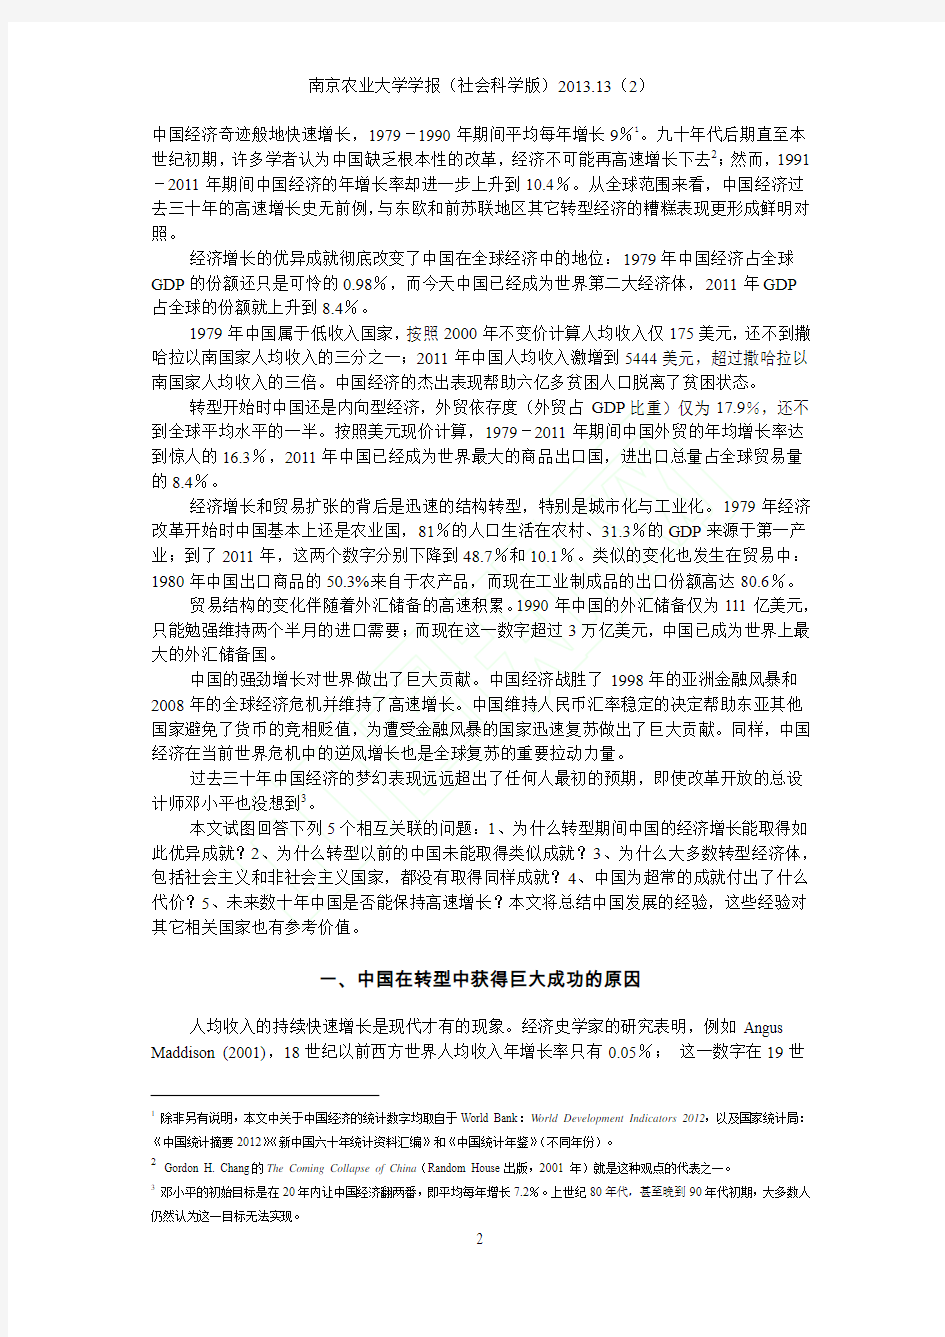 林毅夫 解读中国经济